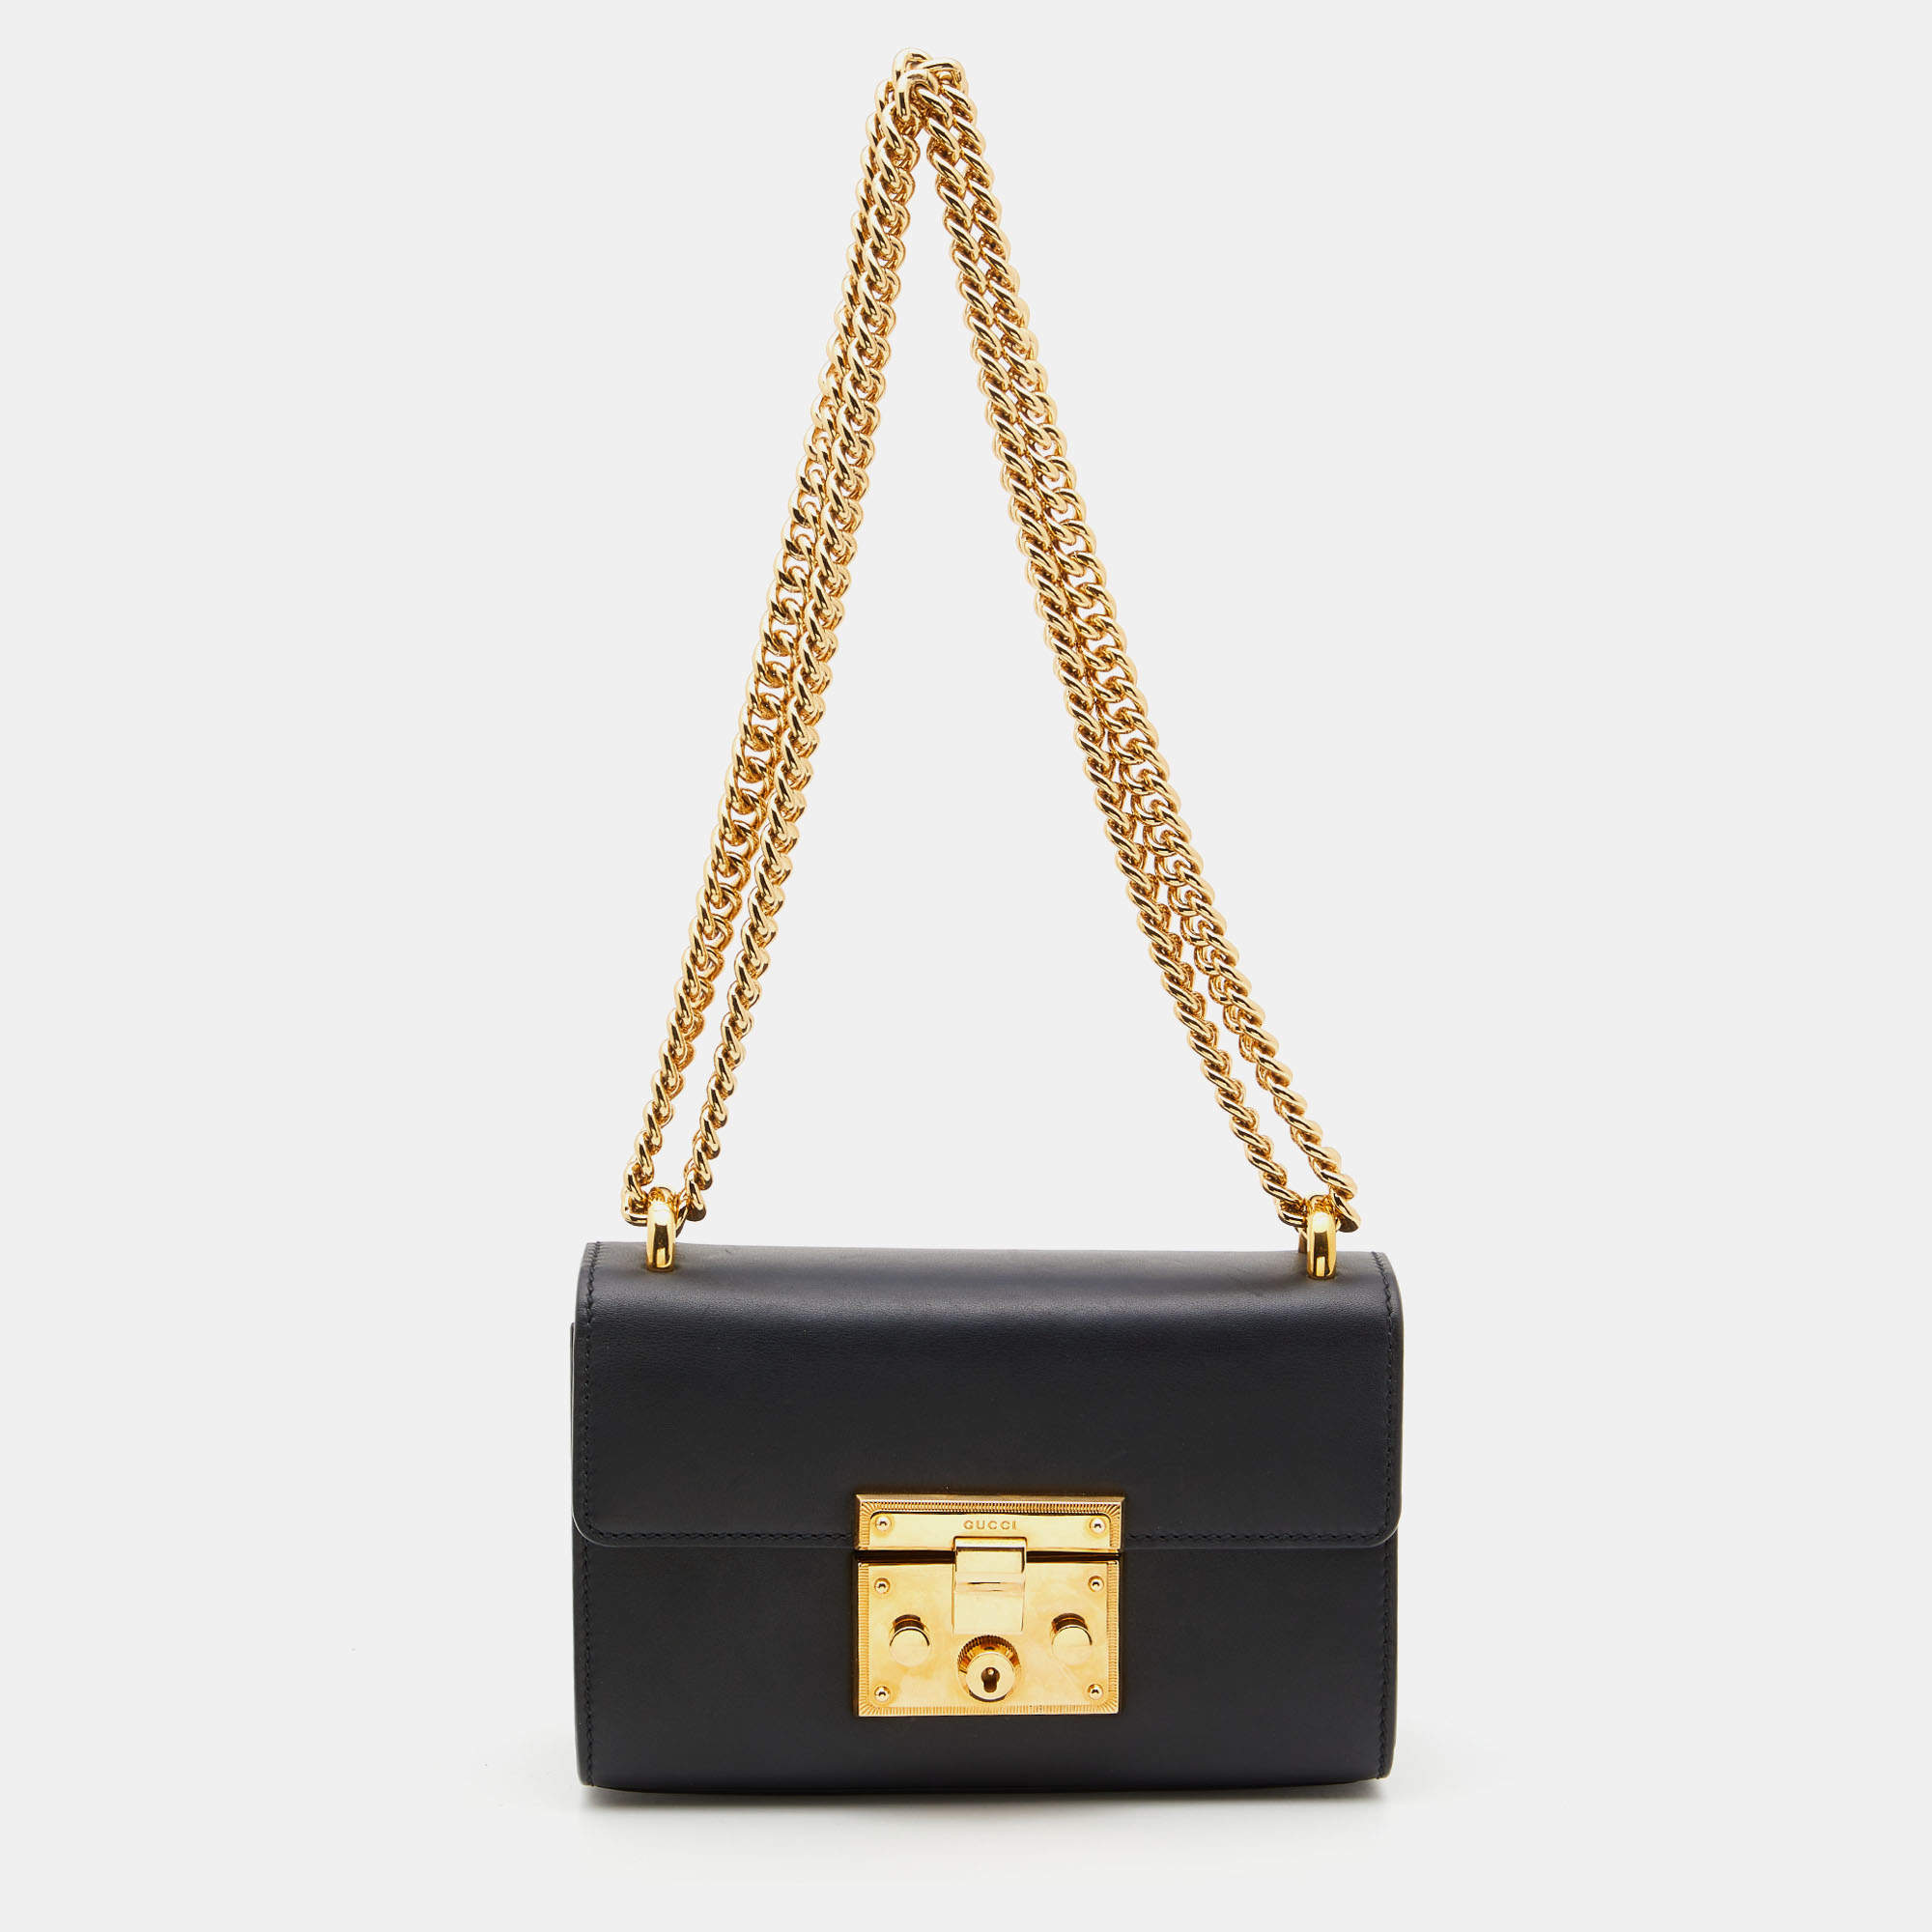 Buy Vintage Gucci Hobo Bag Black Leather Gold Horsebit Handle Women  Shoulder Bag Online in India - Etsy